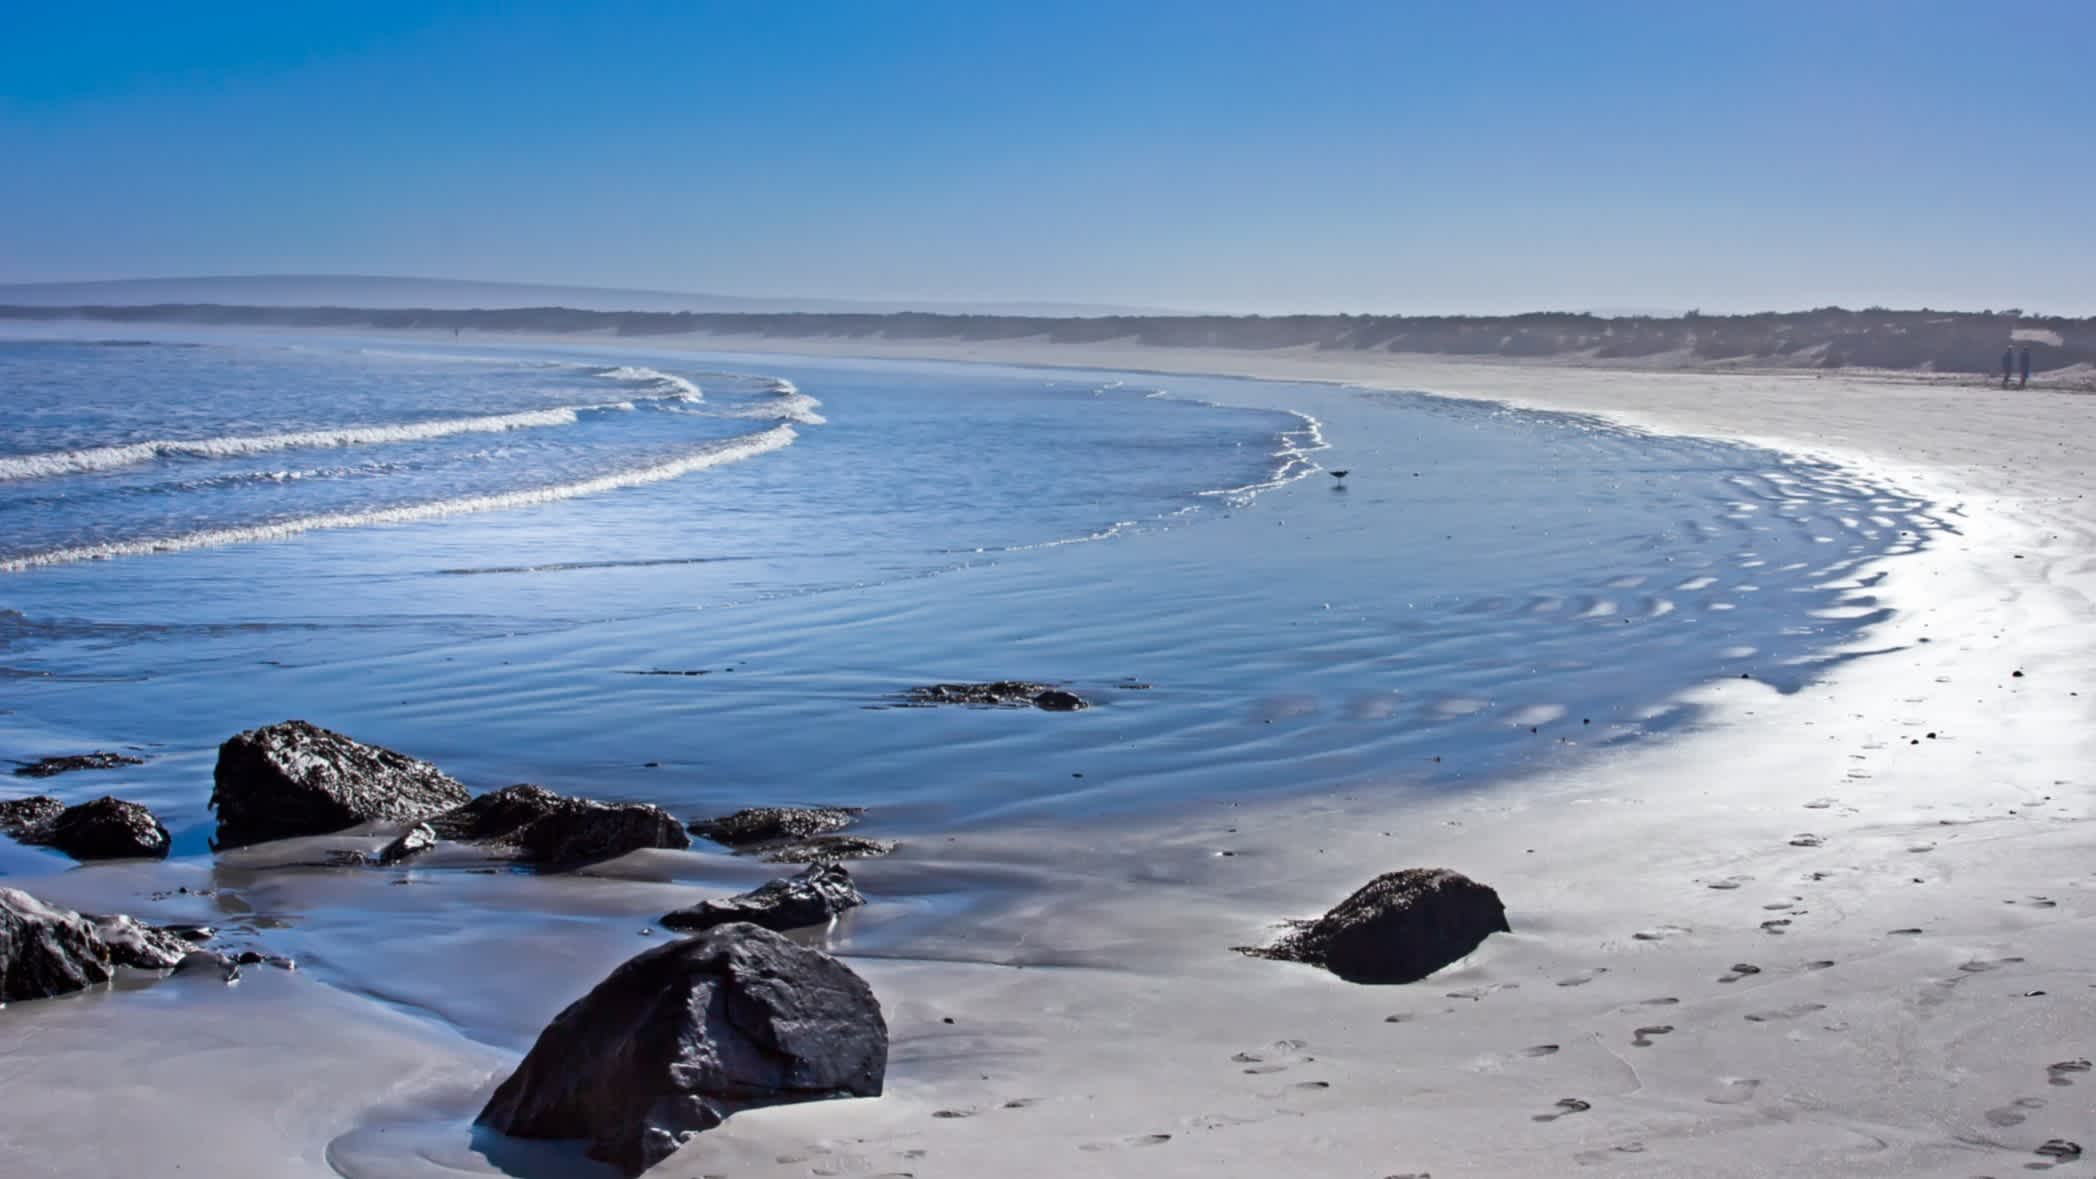 Blick auf den breiten Sandstrand mit kleinen Wellen und schwarzen Felsen bei Sonnenschein in Paternoster, Südafrika.
